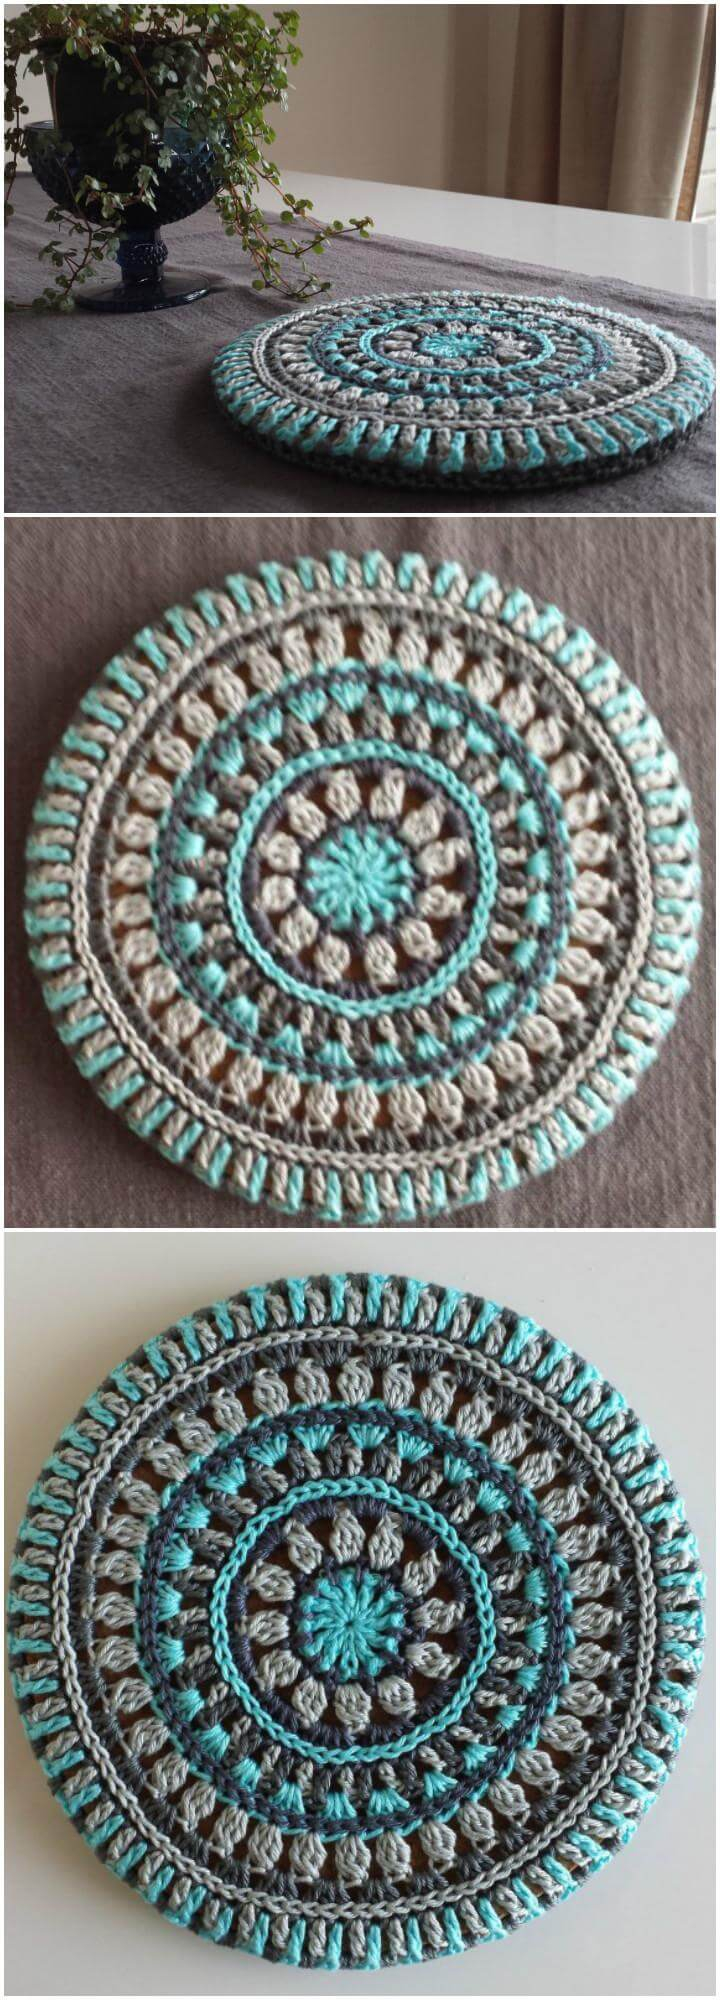 Free Crochet Mandala Pattern 60 Free Crochet Mandala Patterns Diy Crafts